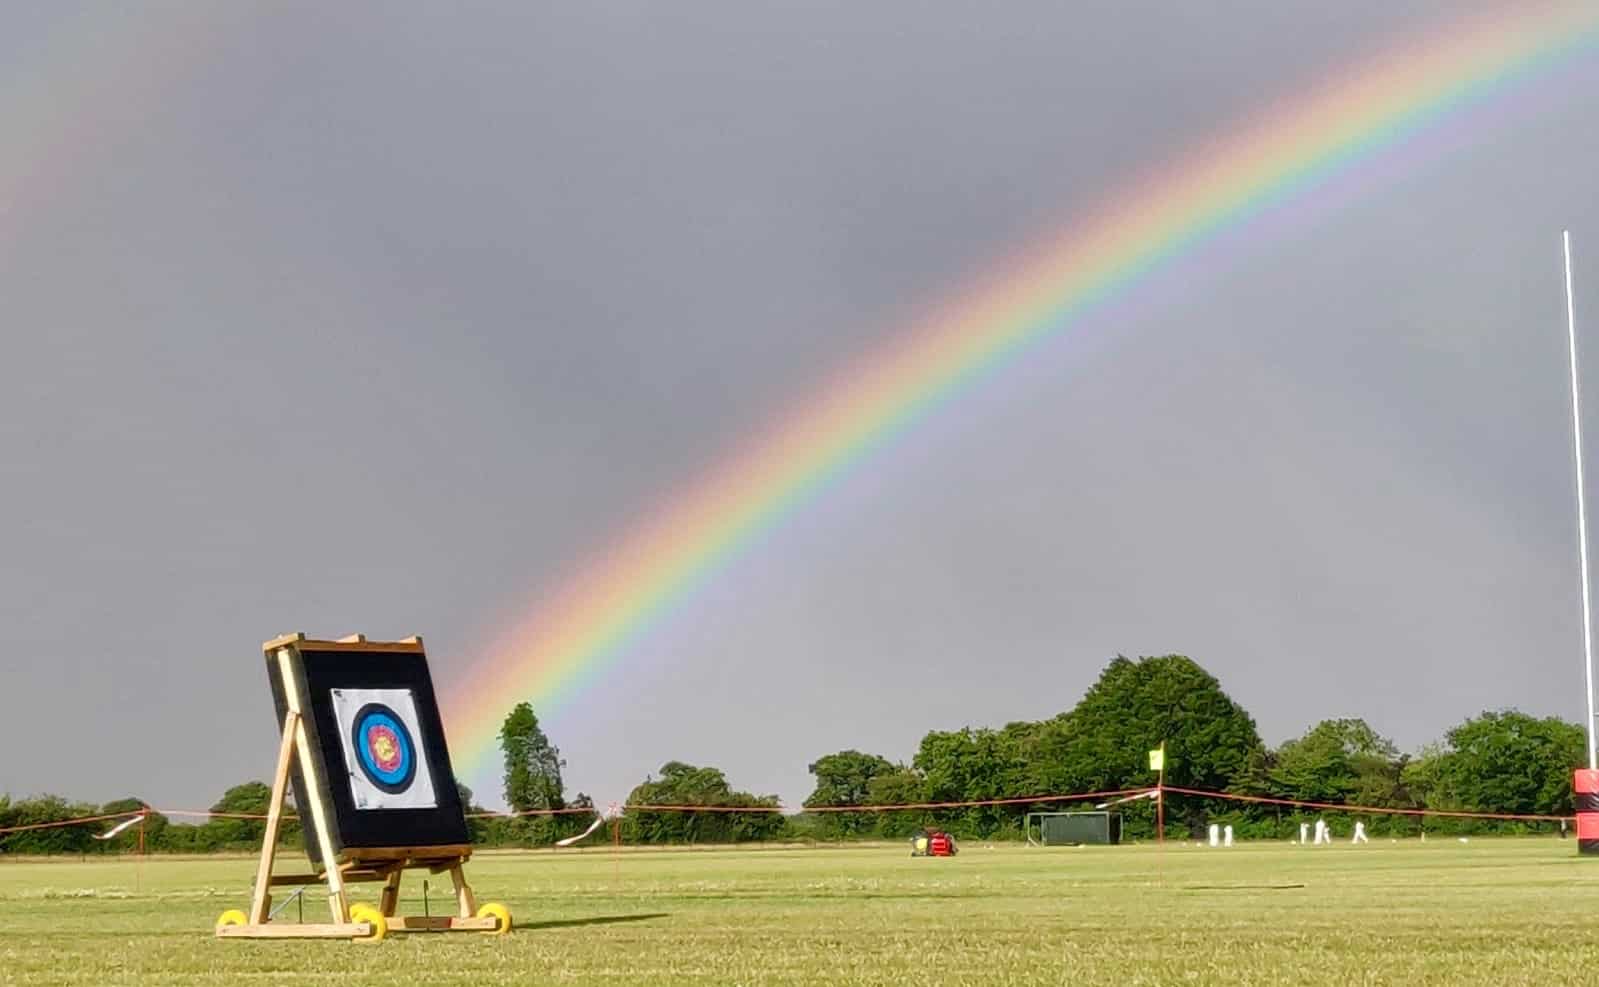 Rainbow over archery target